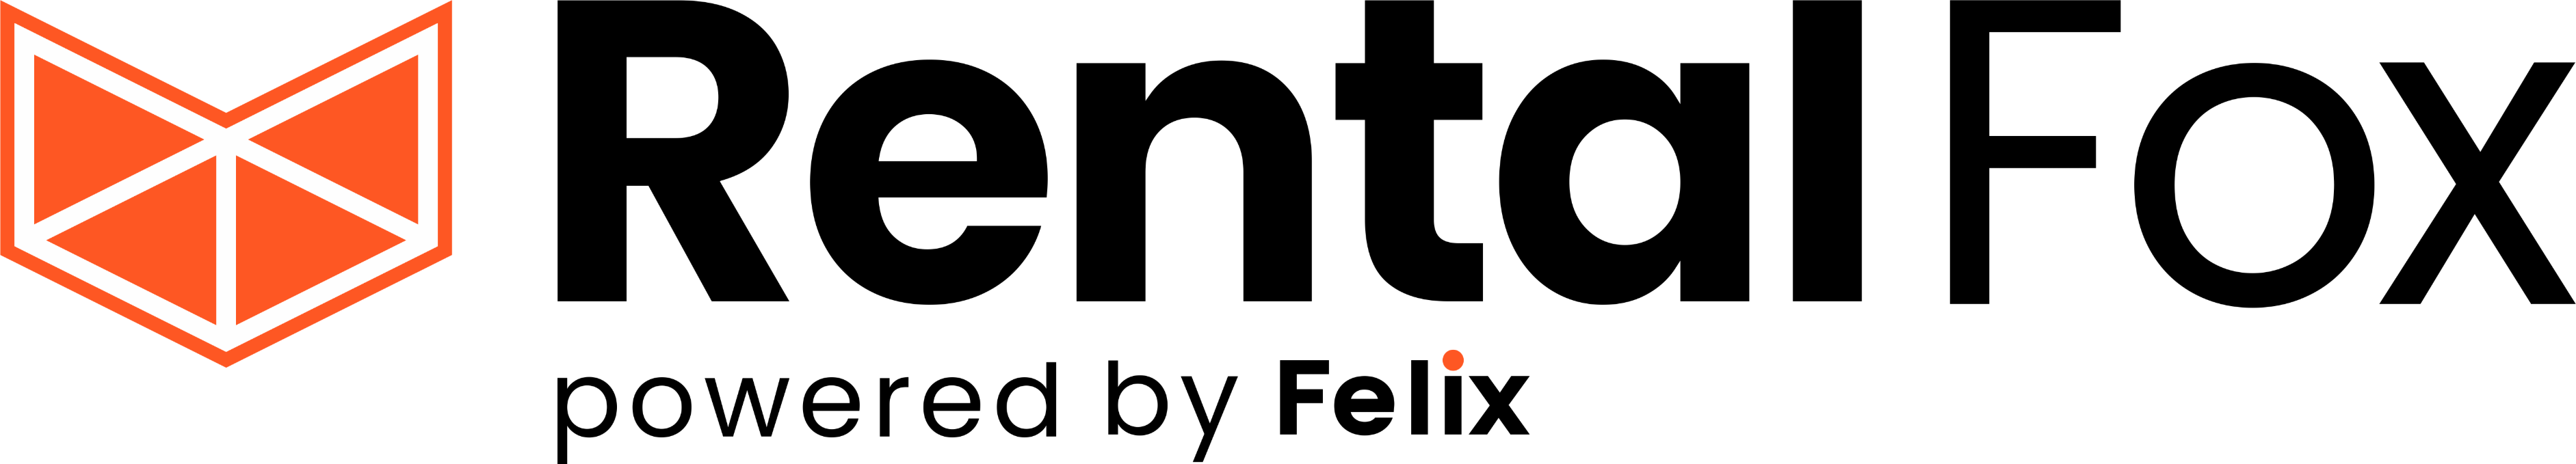 Rental fox logo (for white backgrounds) (1)